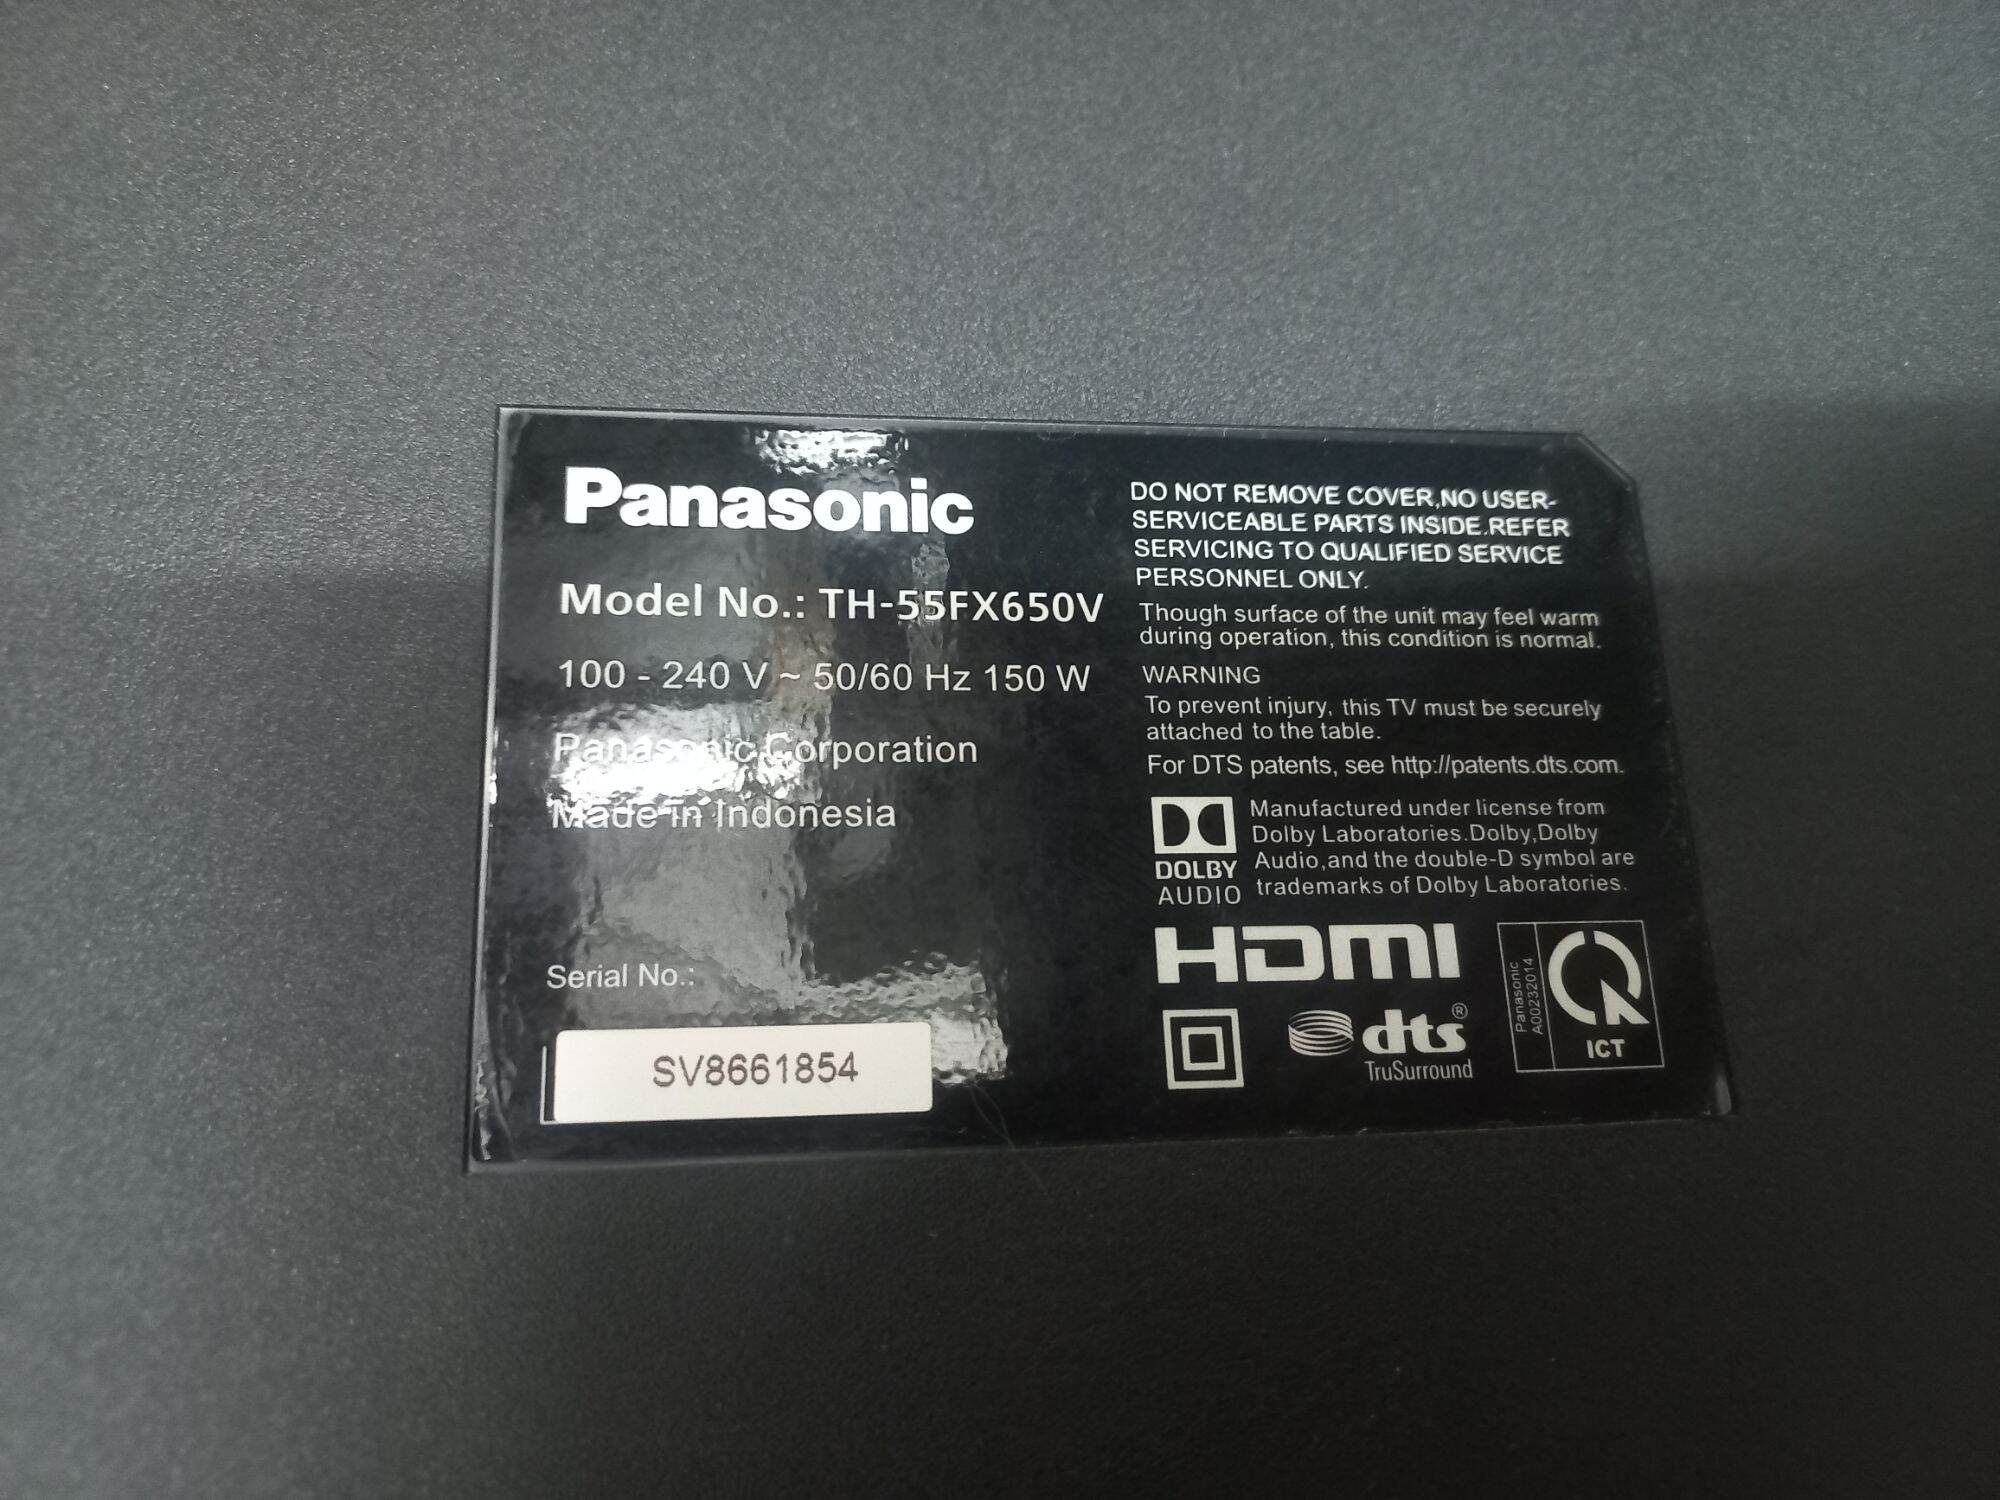 Android tivi Panasonic 55in model 55FX650V Hệ điều hành Android kết nối wifi intenet blutut xem youtube trực tiếp